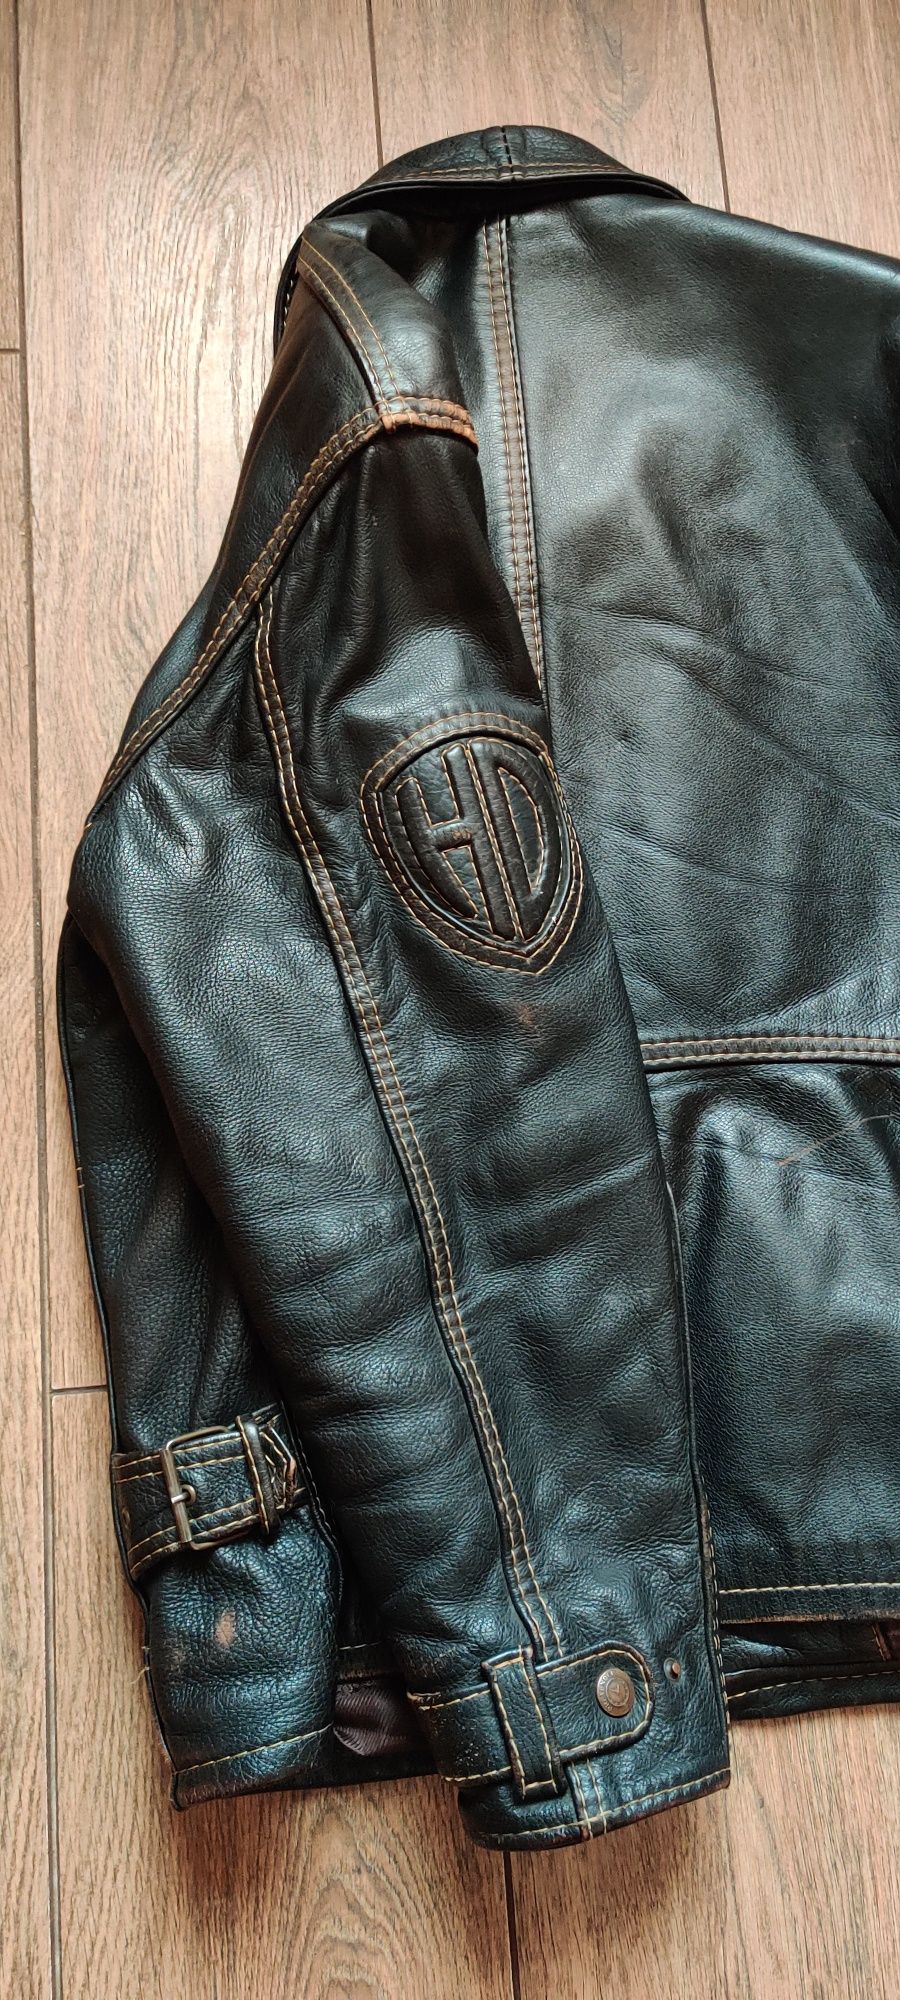 Куртка "Harley Davidson" от бренда  Pretender, кожа, size L.